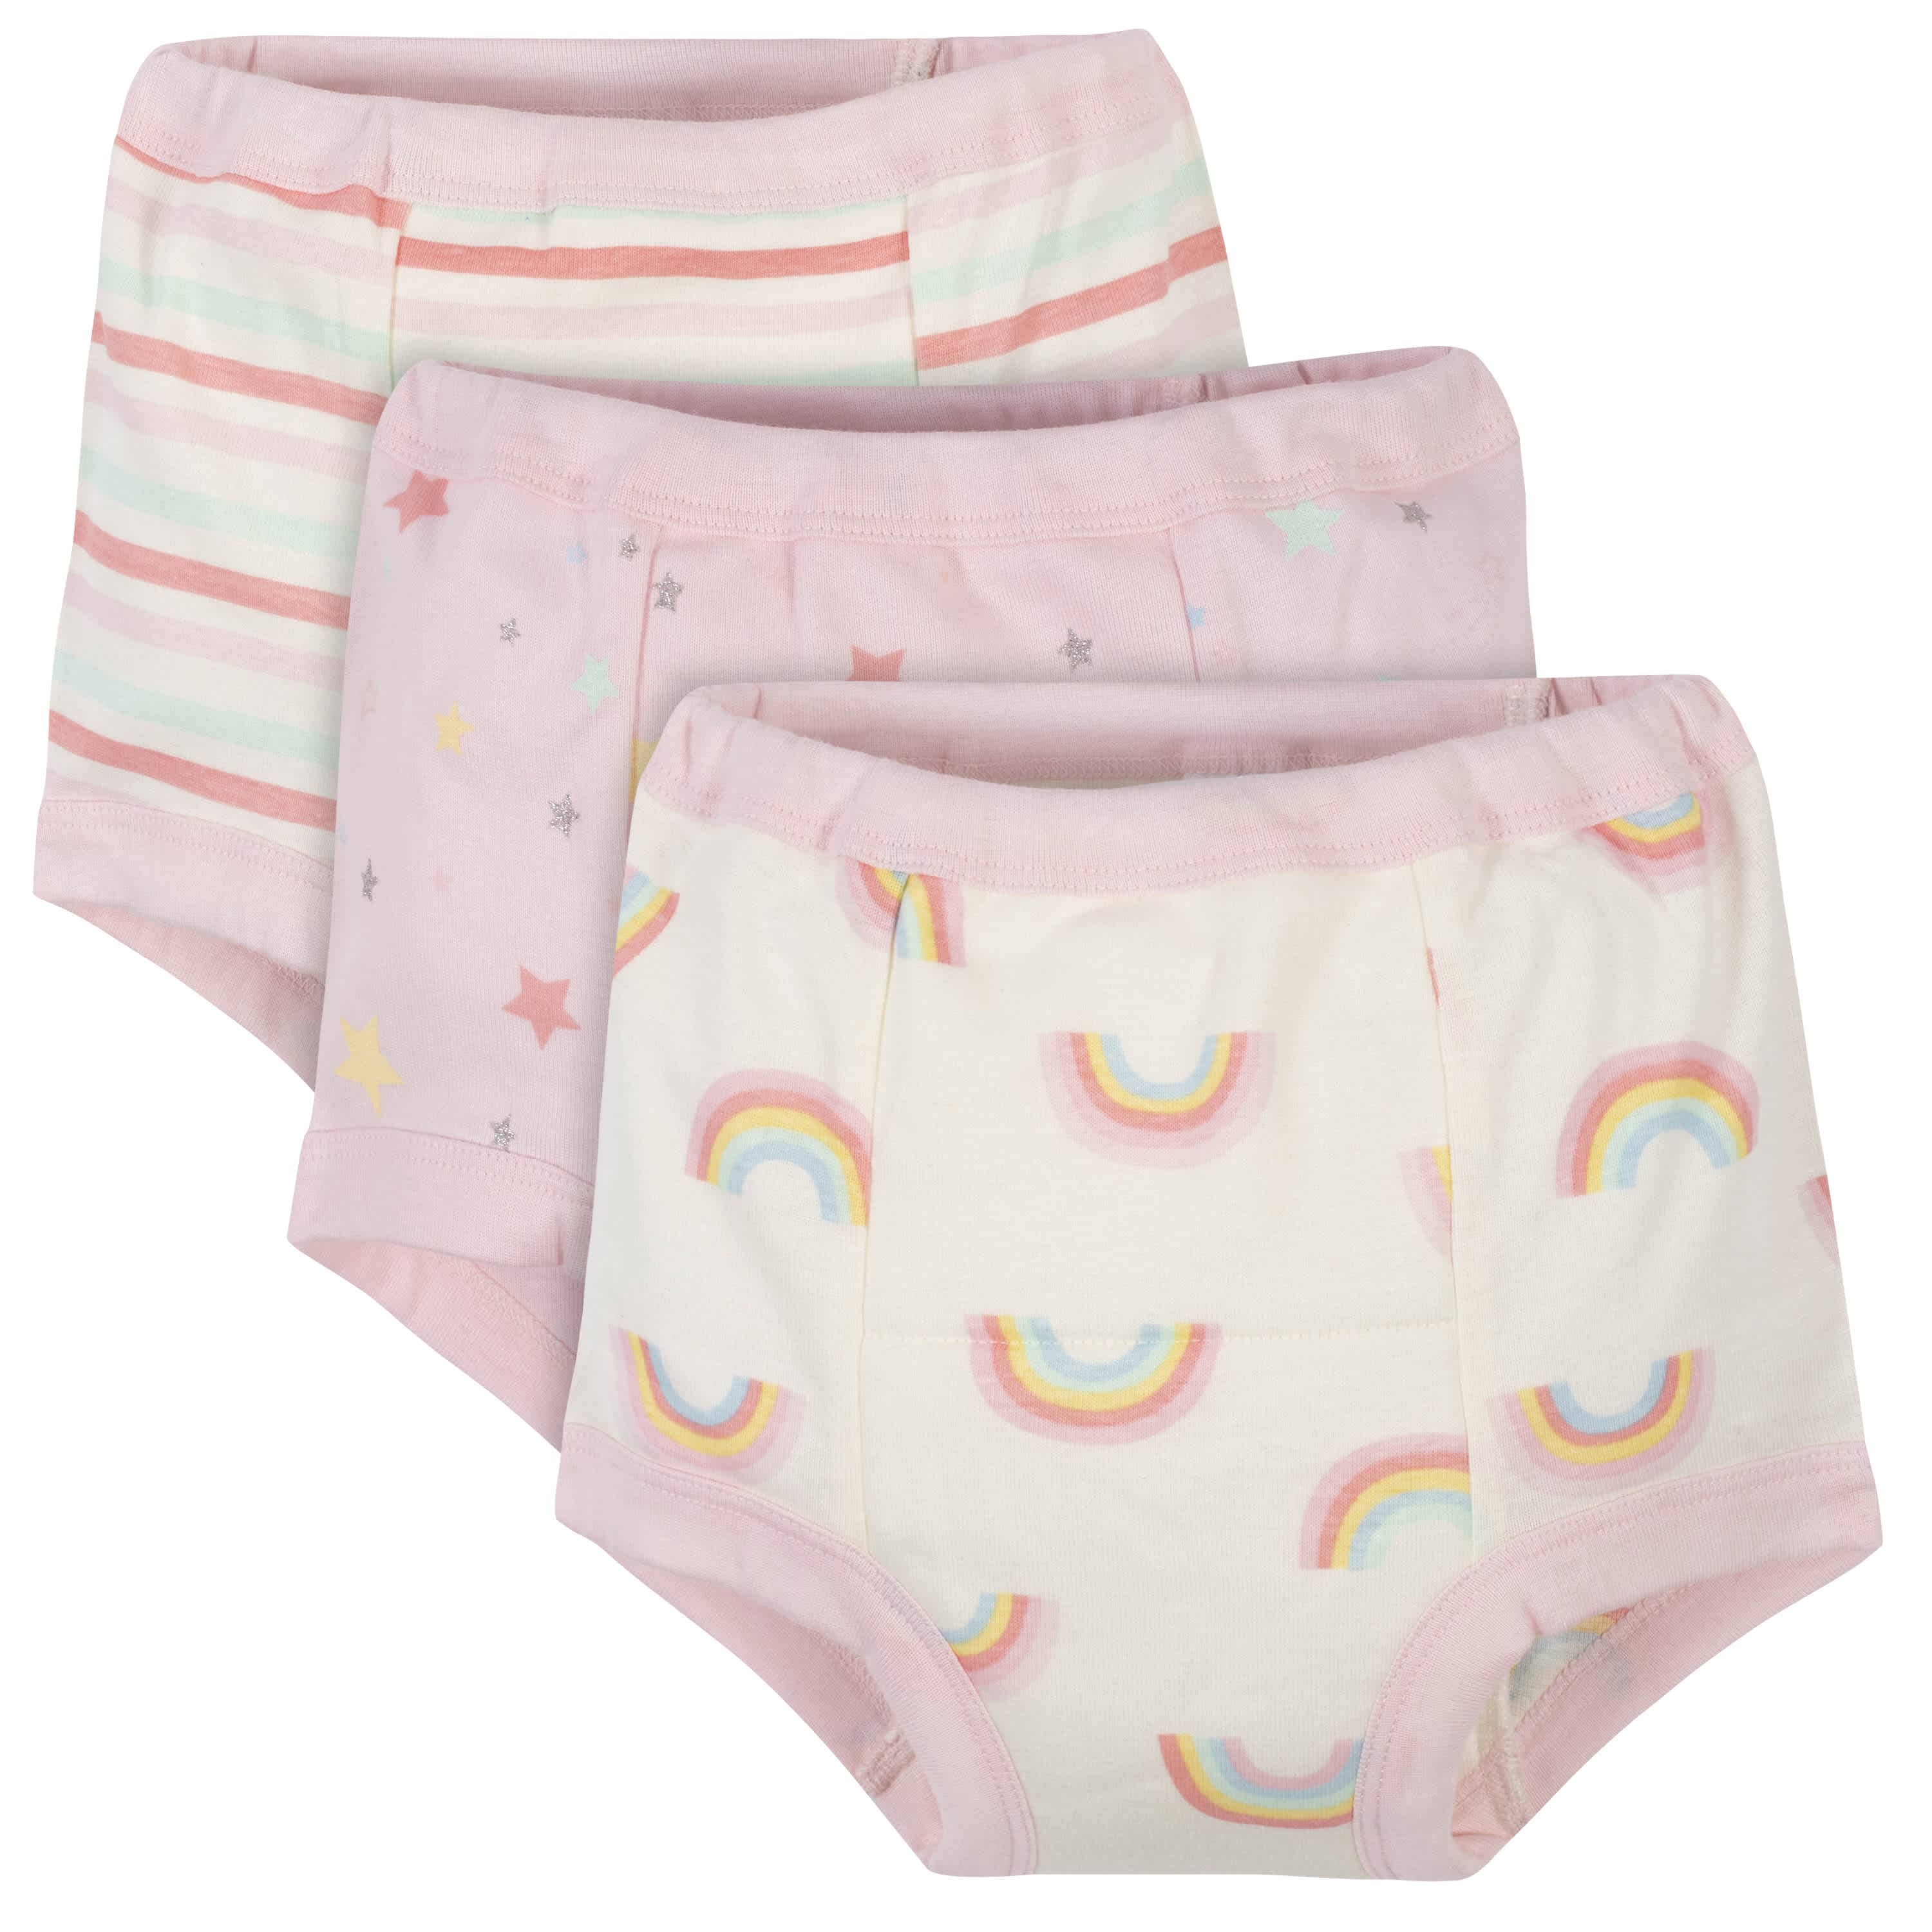 Gerber Toddler Girls Organic Cotton Reusable Training Pants, 3-Pack 